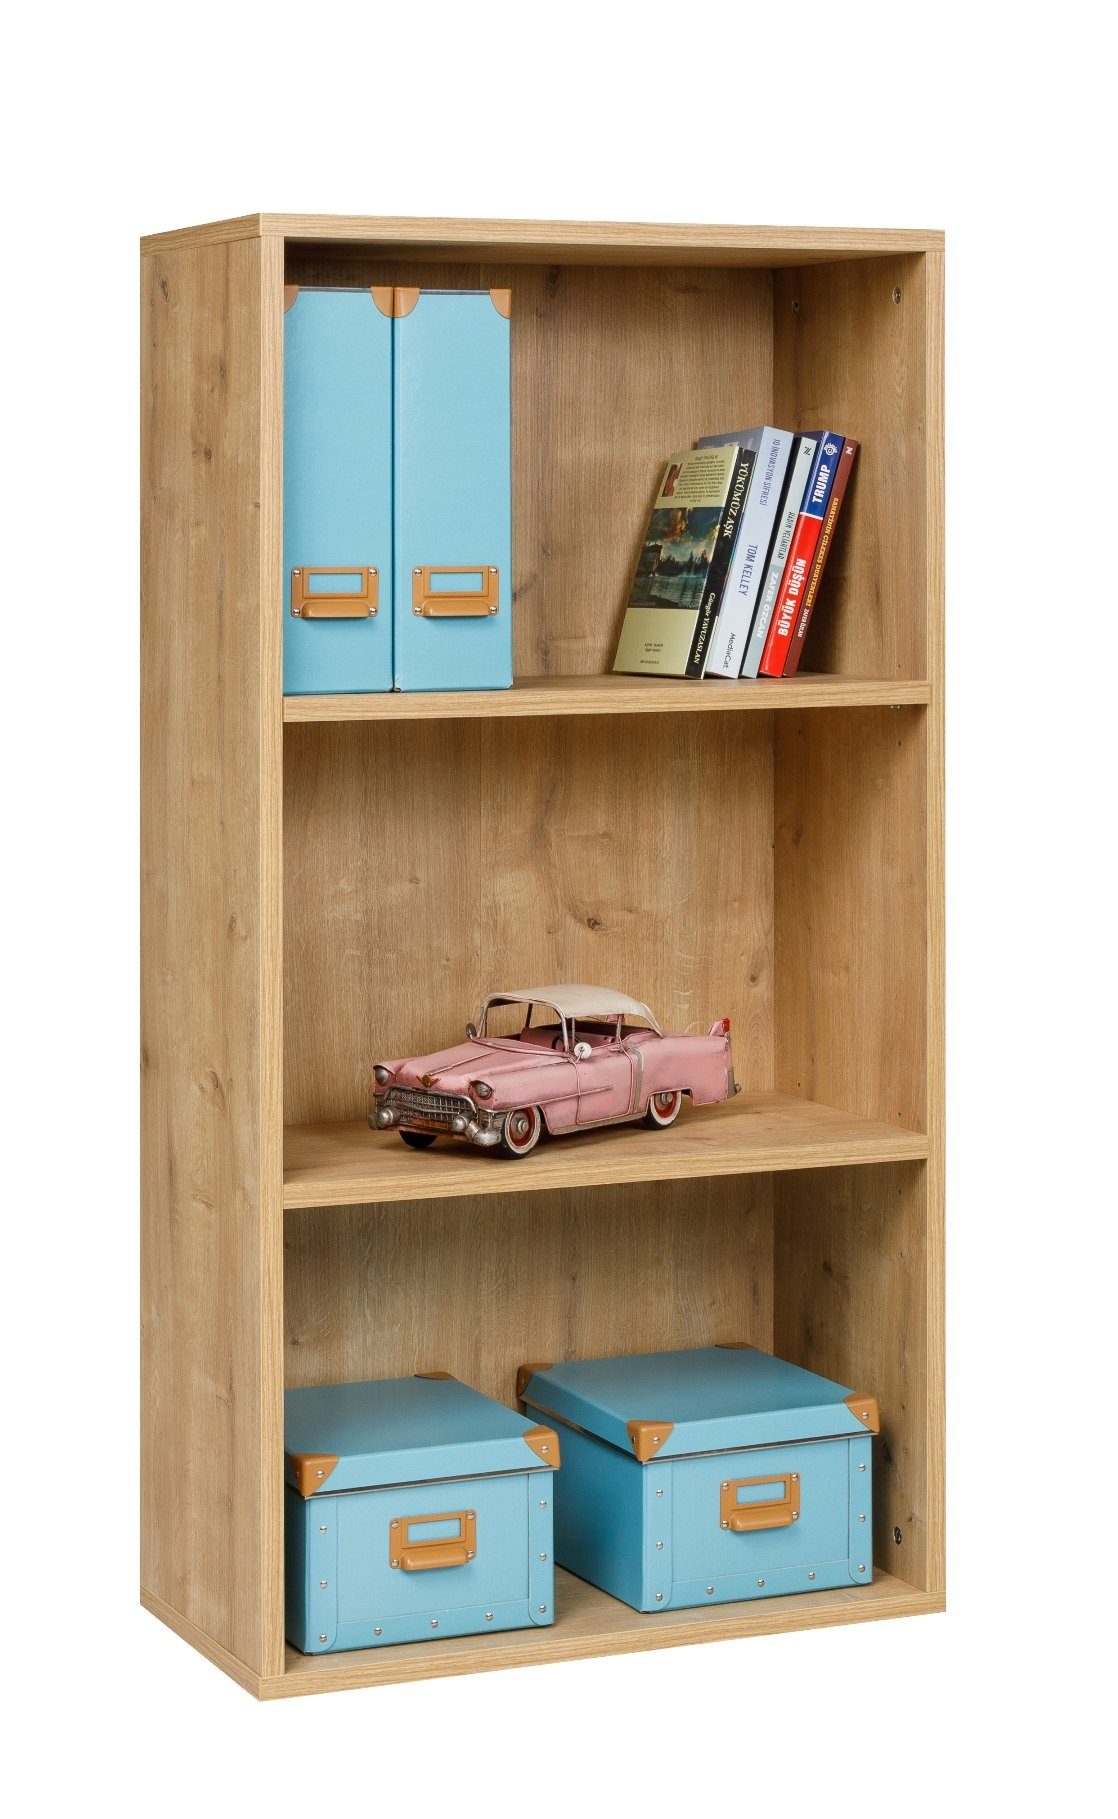 Furni24 Bücherregal Bücherregal mit 3 Fächern, Saphir Eiche Dekor, 30x24x80 cm